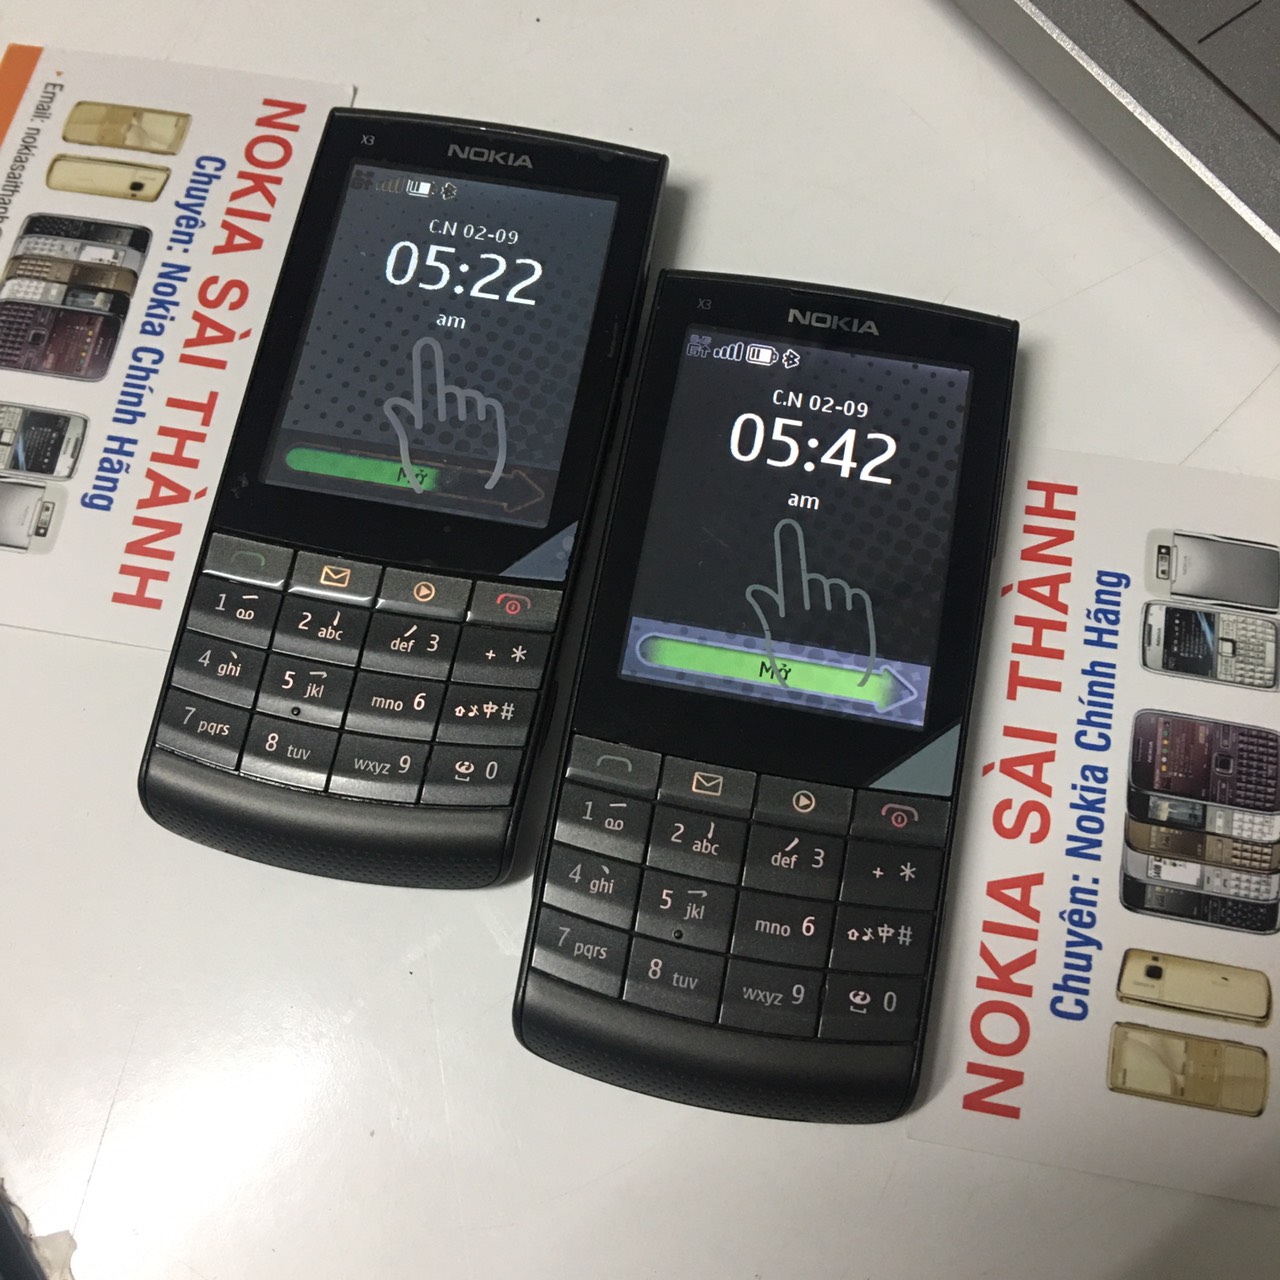 Bộ sưu tập hình nền Nokia 1280 độc lạ dành cho iPhone - Fptshop.com.vn